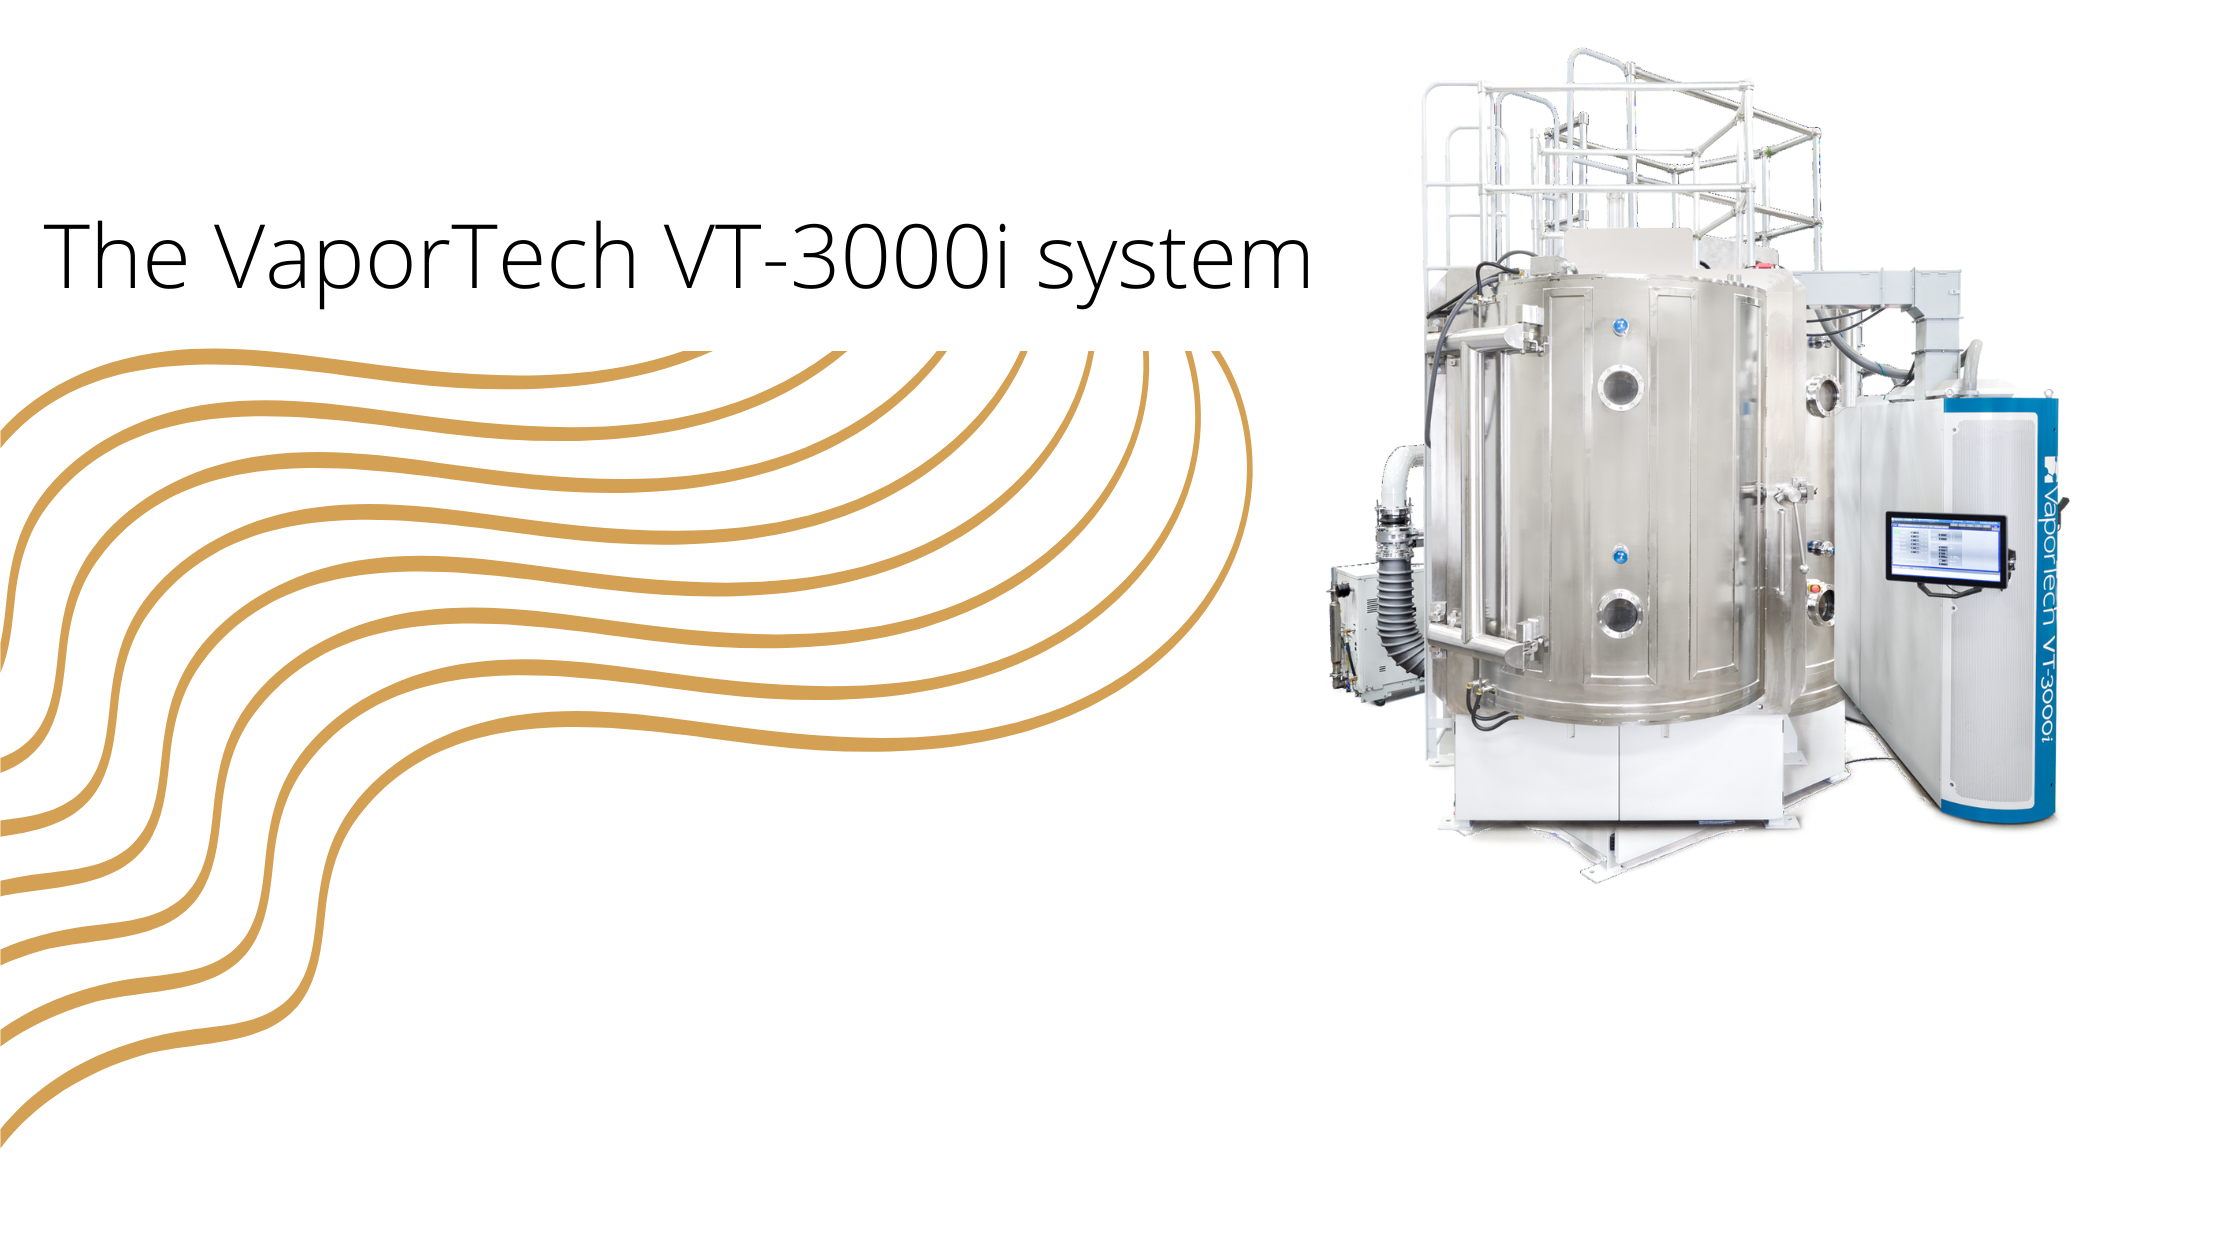 VT-3000i system